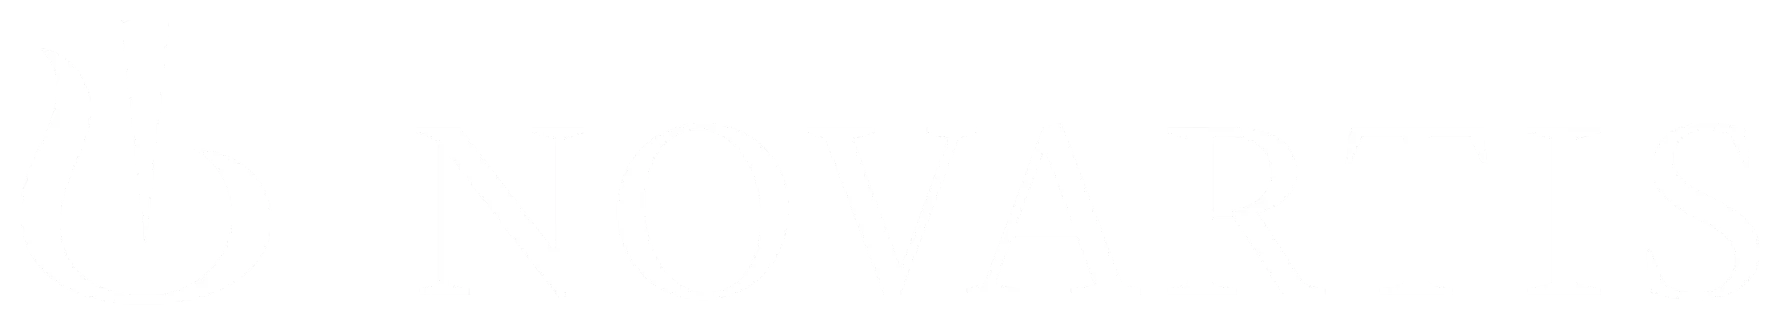 Letölthető kiadványok Novartis logó fehér